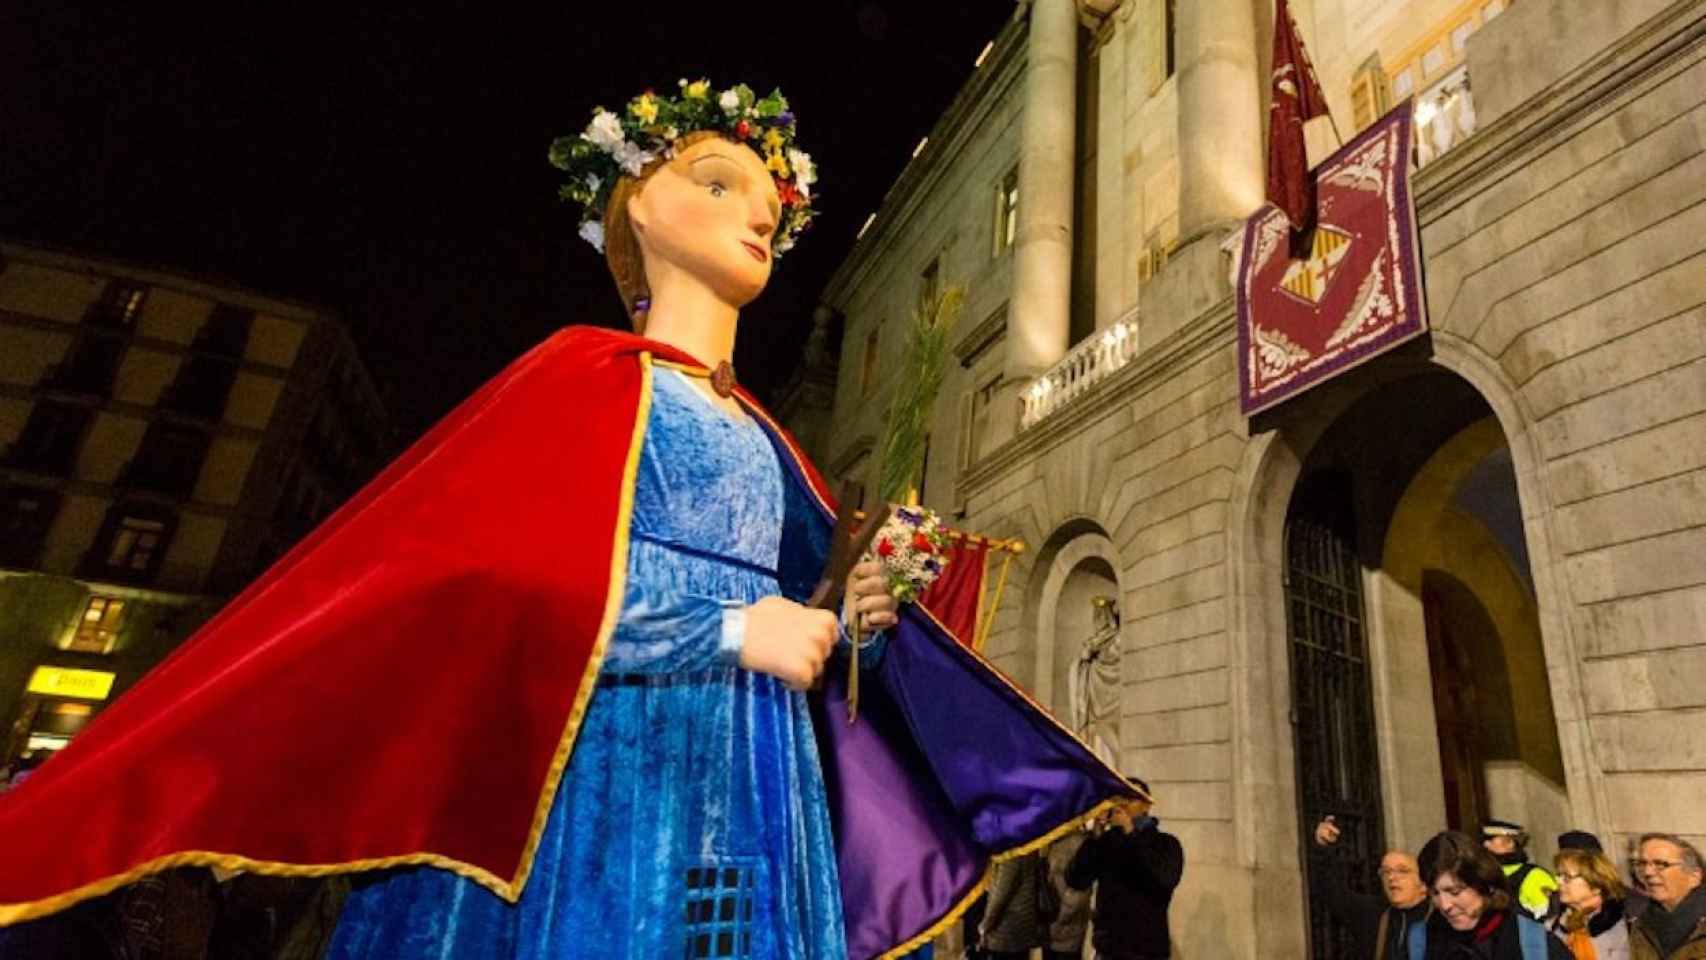 Los gigantes juegan un rol destacado en las Fiestas de Santa Eulàlia de Barcelona / AY DE BARCELONA